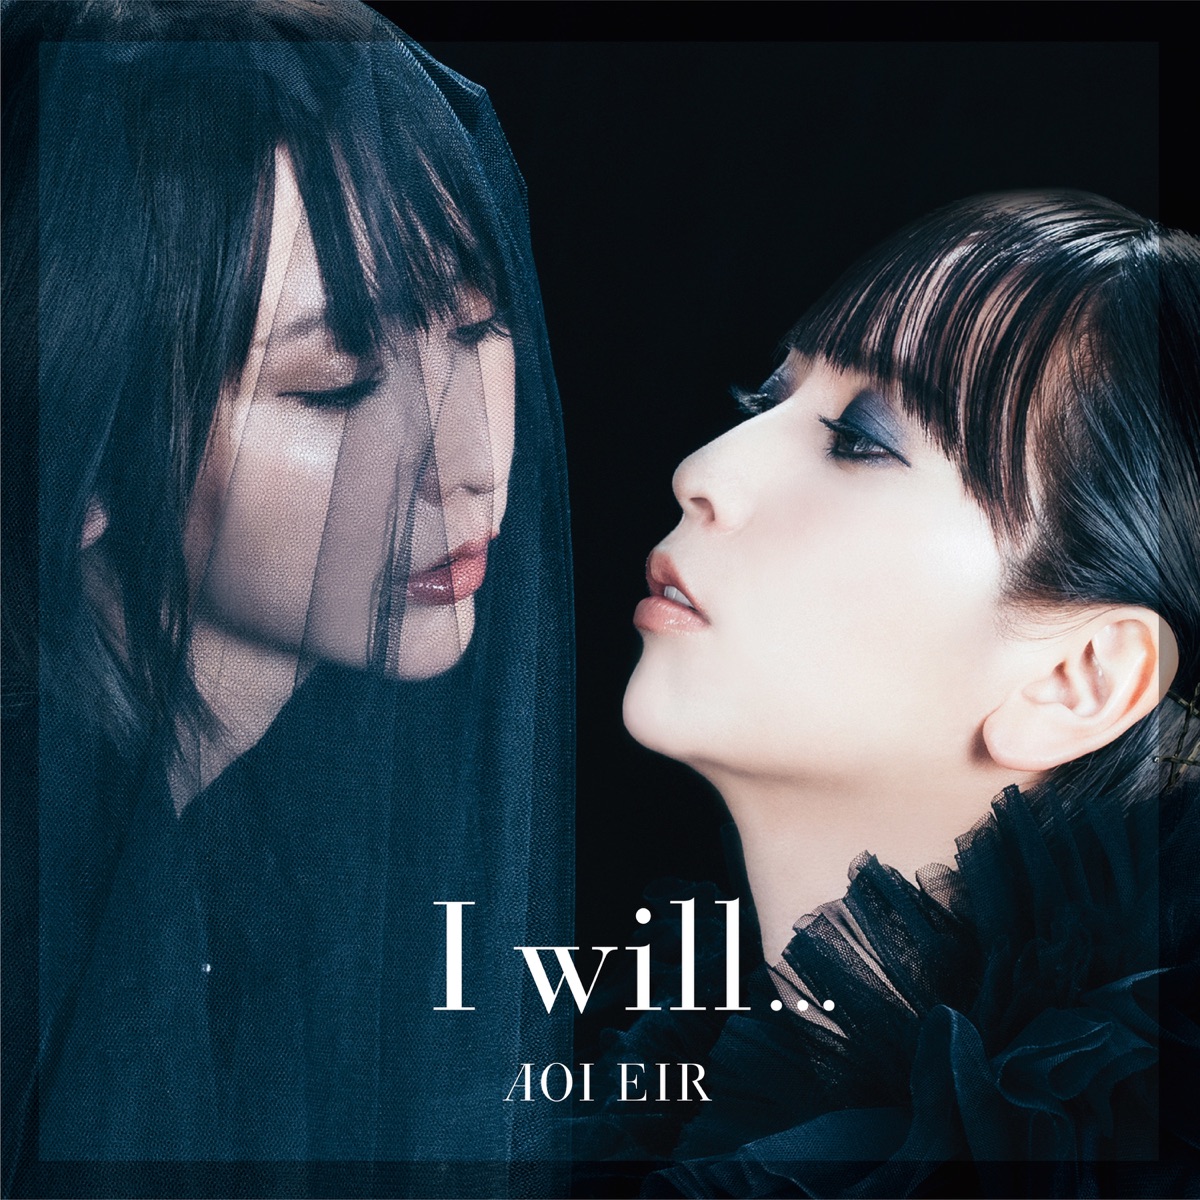 『藍井エイル - I will... 歌詞』収録の『I will...』ジャケット